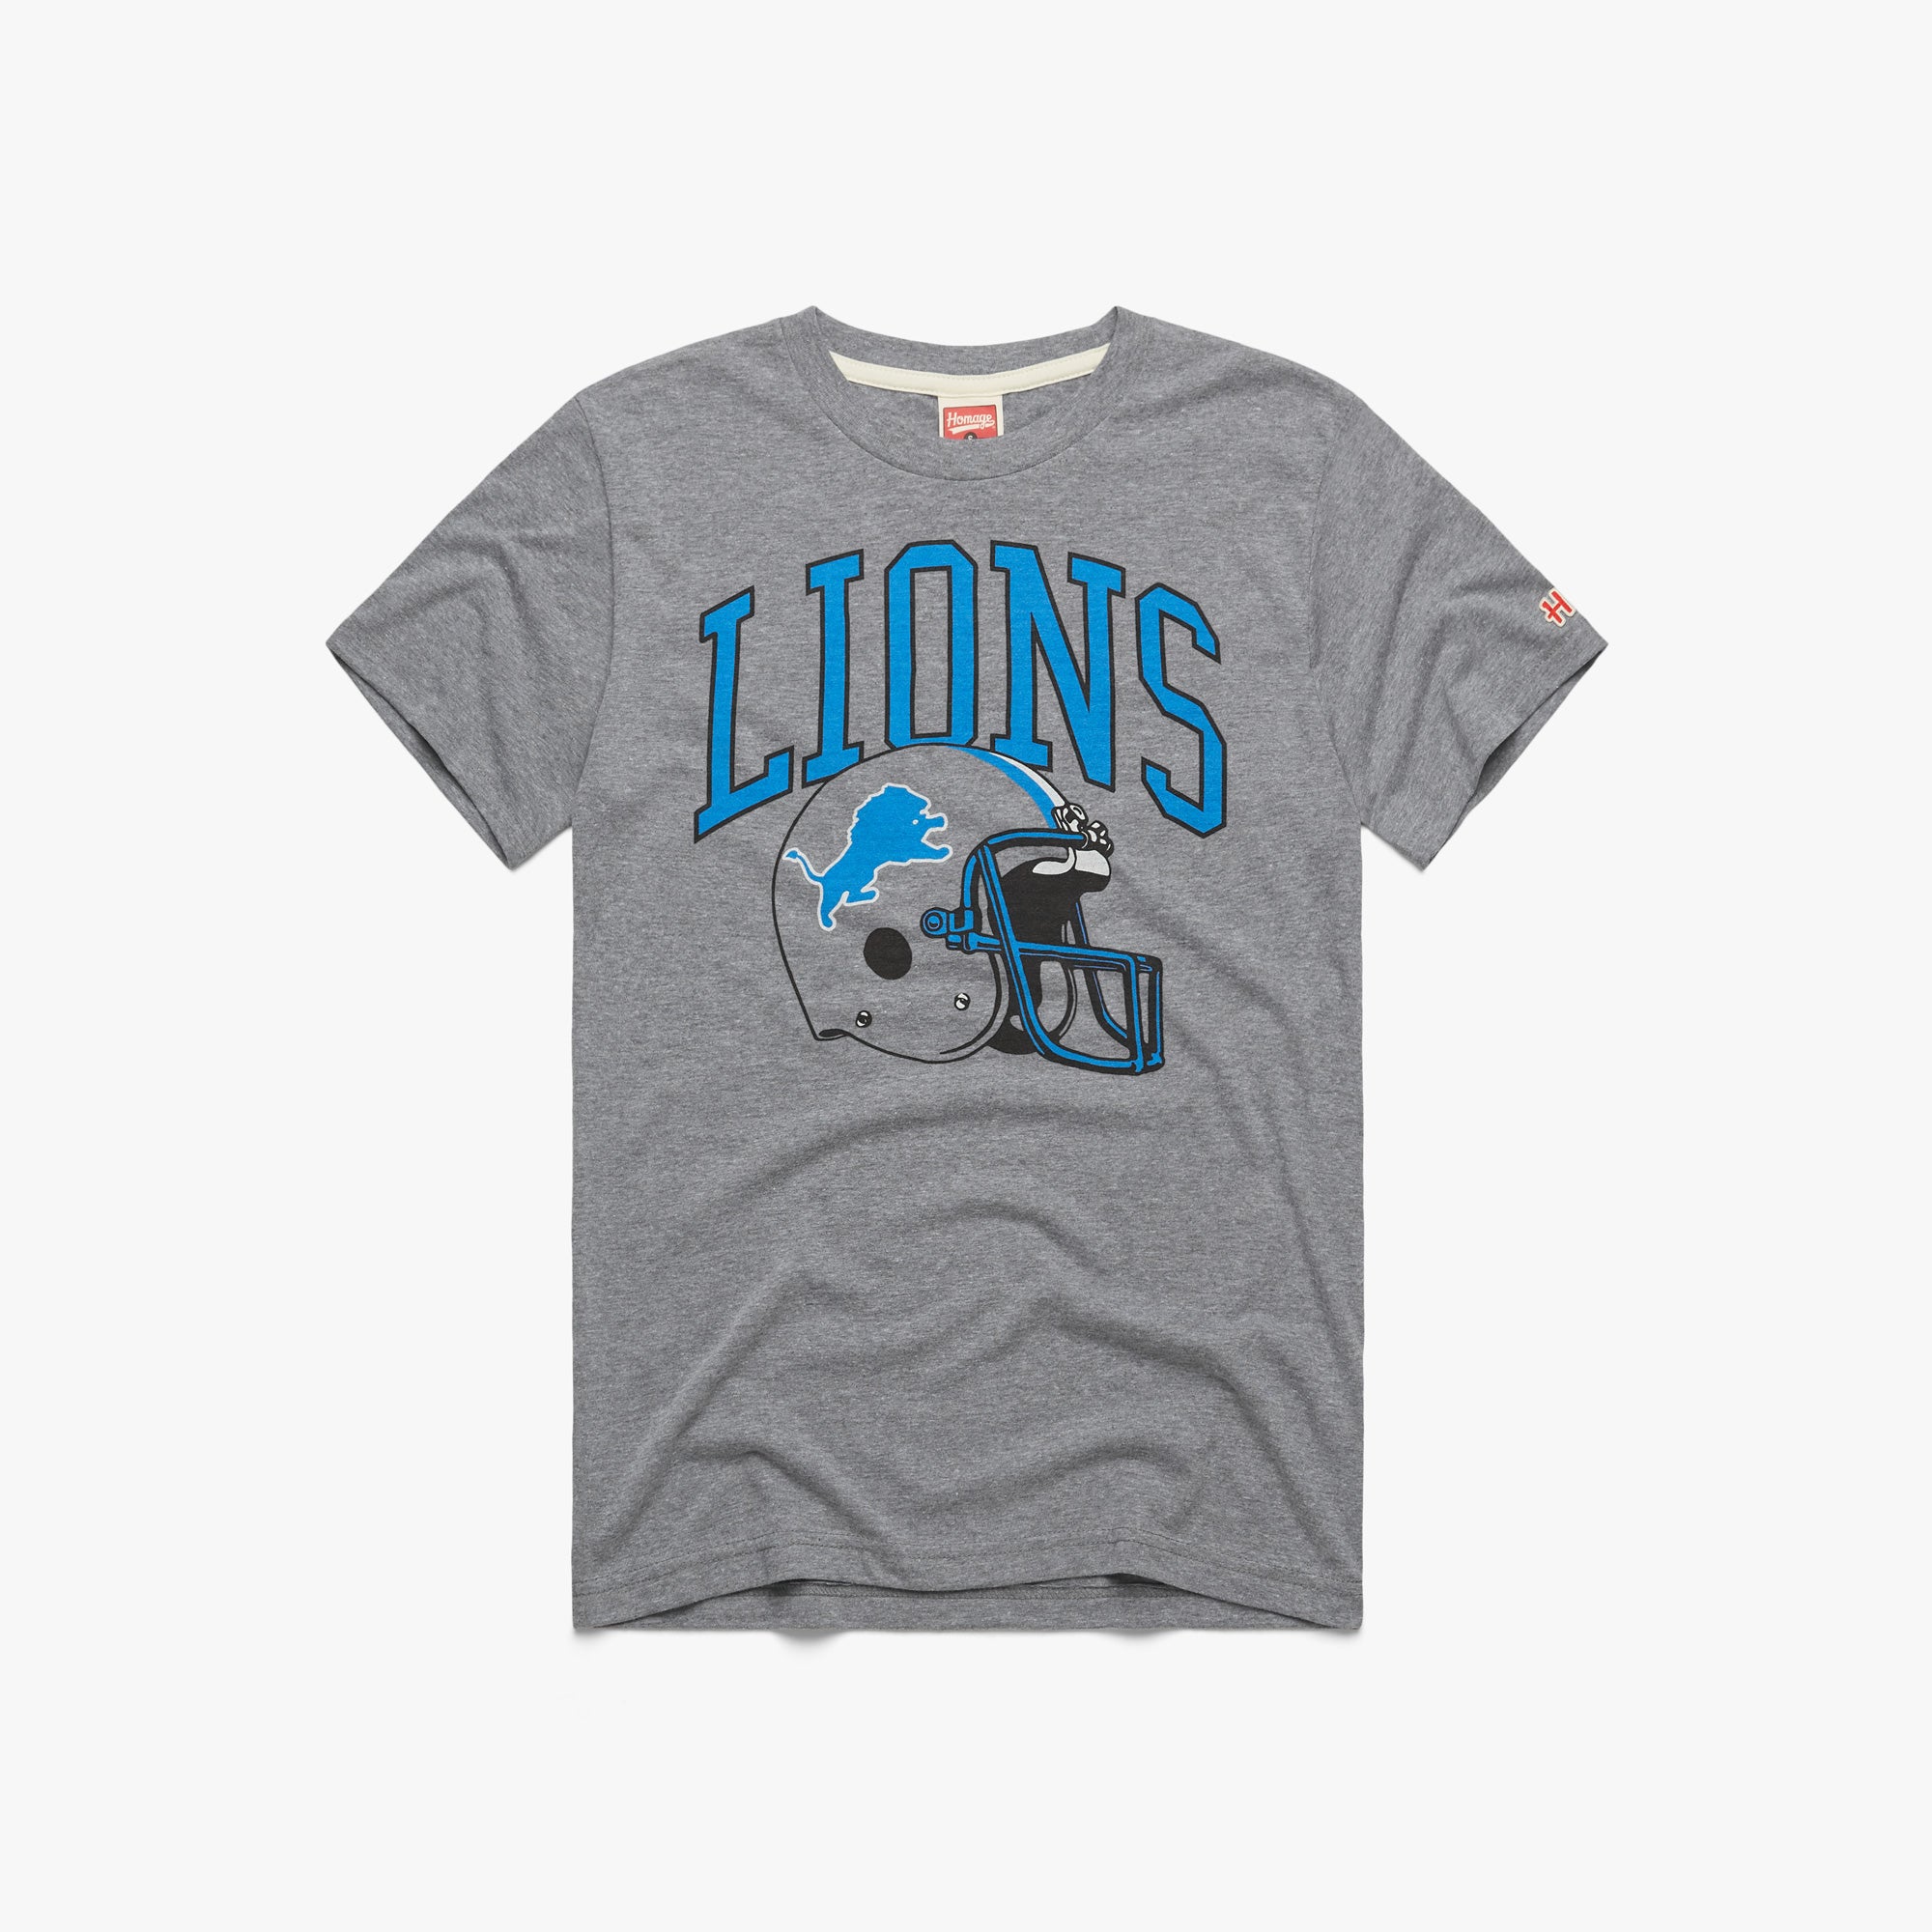 detroit lions t shirt vintage